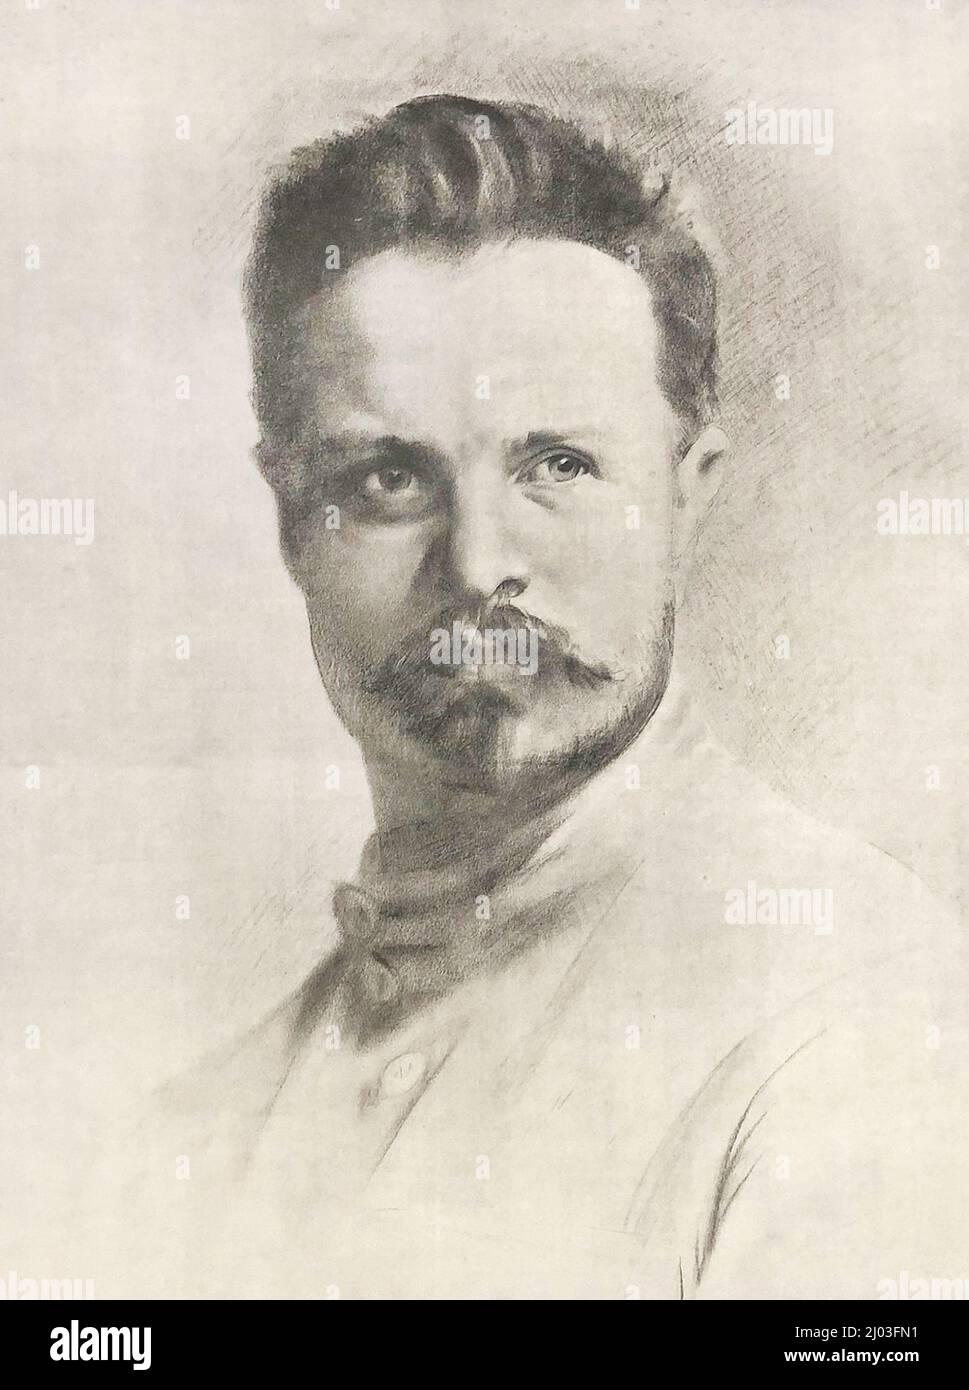 Portrait of Mikhail Frunze. Stock Photo